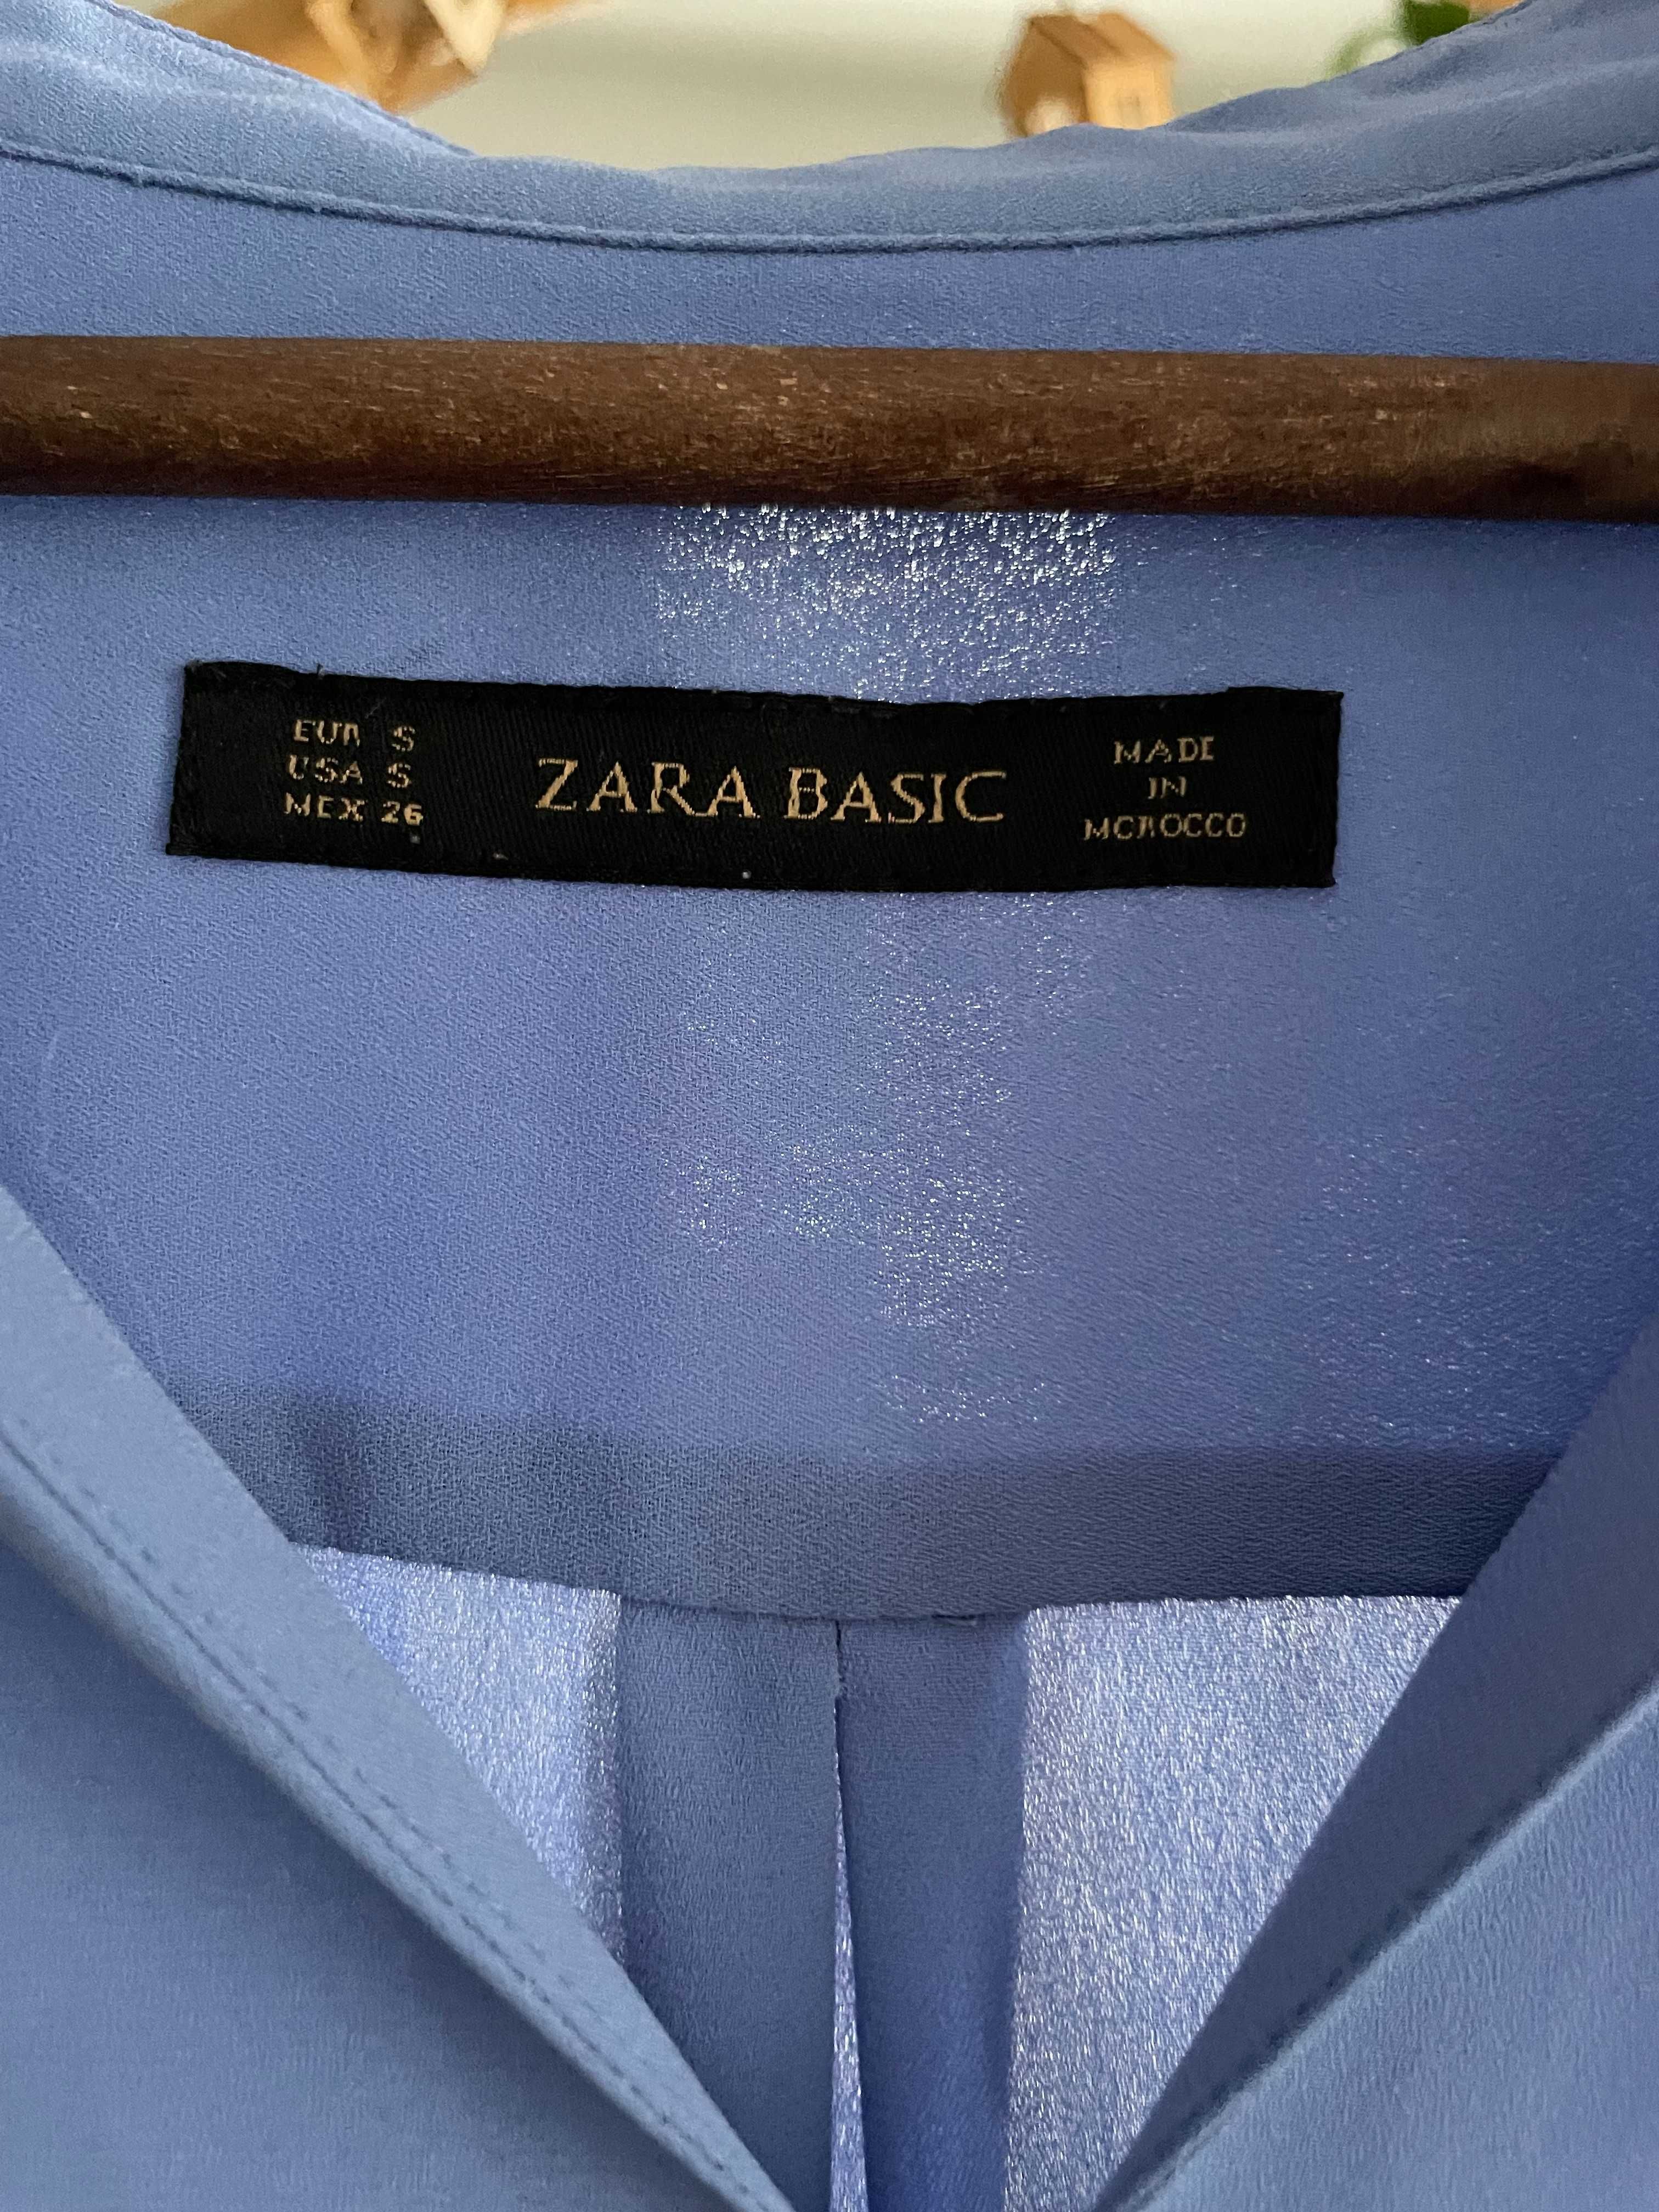 Niebieska koszula Zara Basic, roz. S, 50 zł